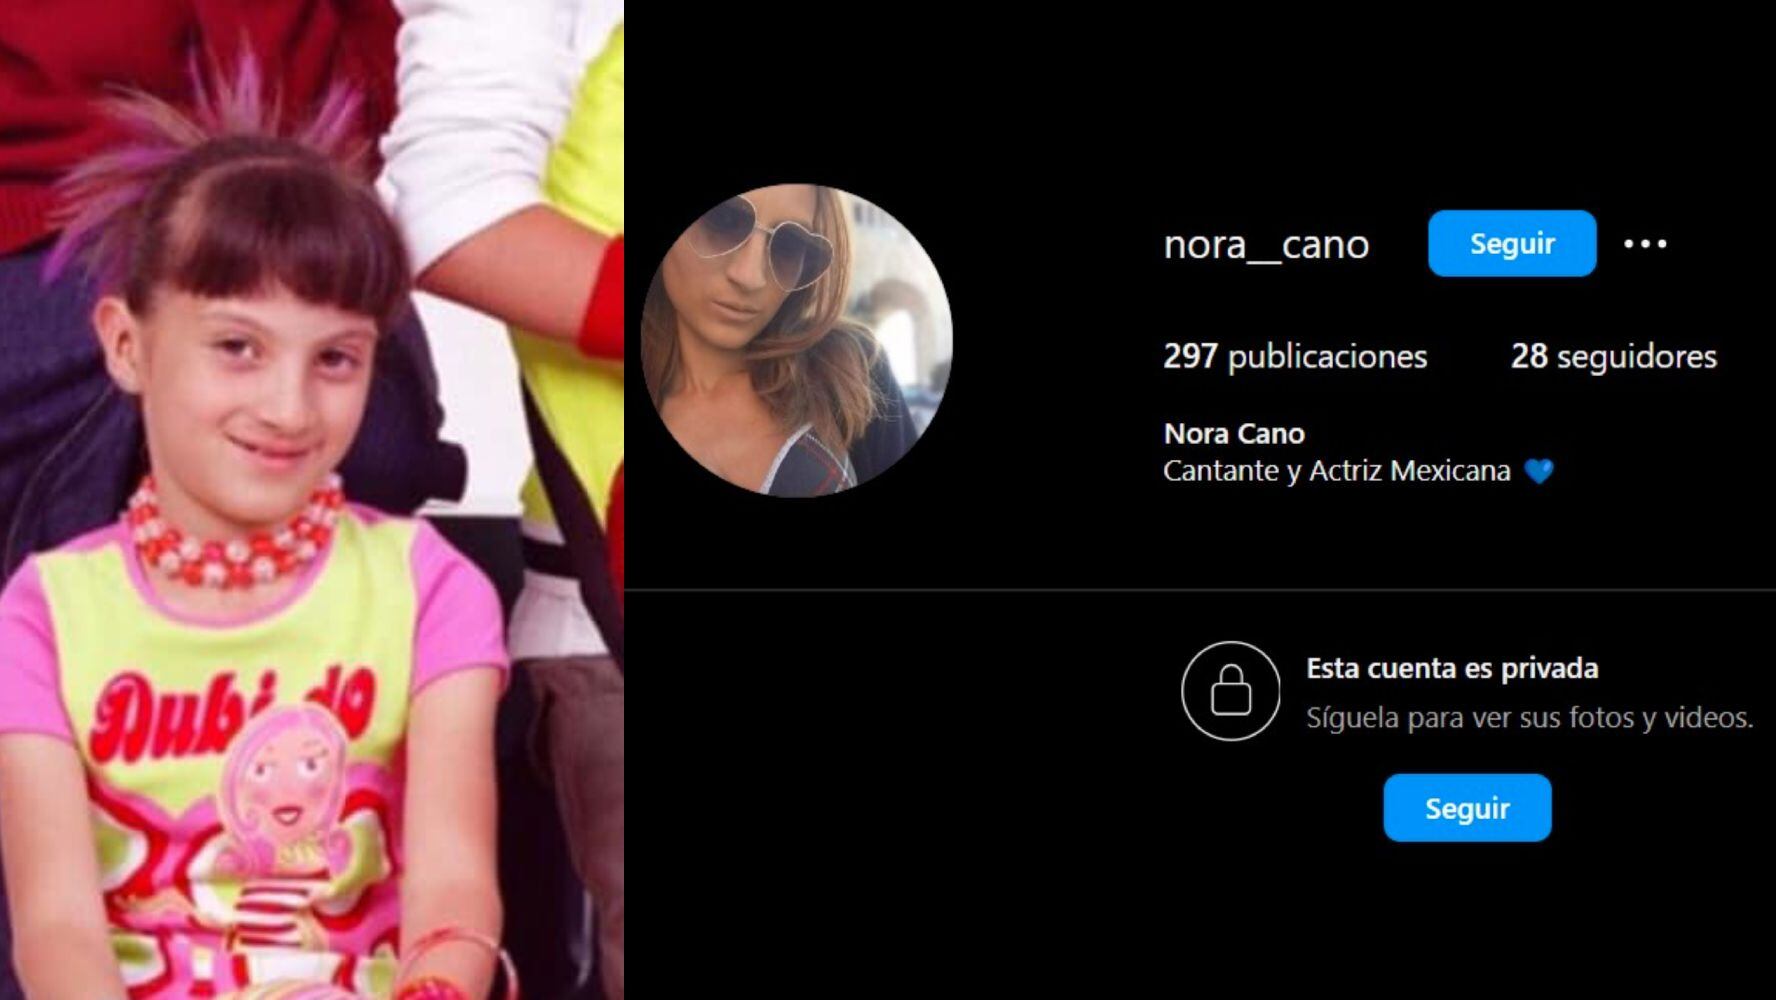 Perfil de Nora Cano en Instagram. (Foto: Captura de pantalla / Facebook / GeneracionTN)